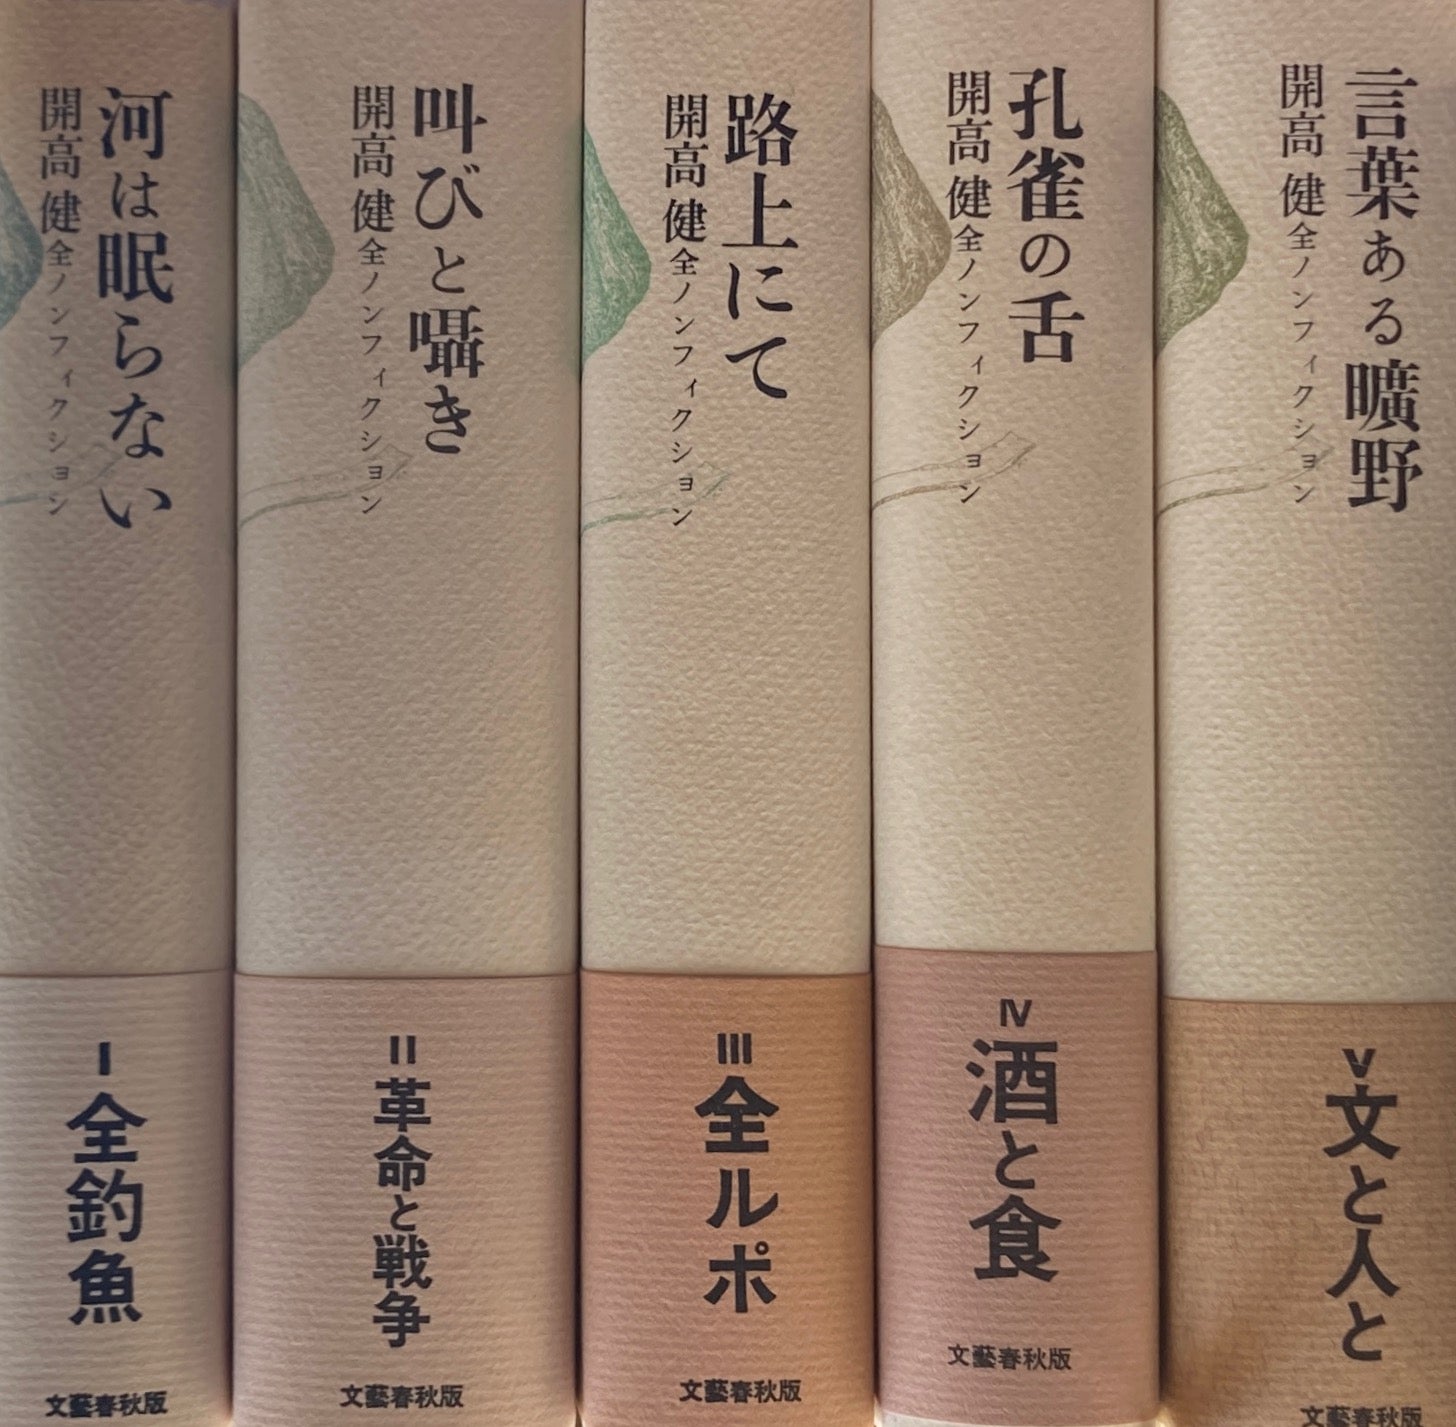 開高健 全ノンフィクション 全5巻 – smokebooks shop